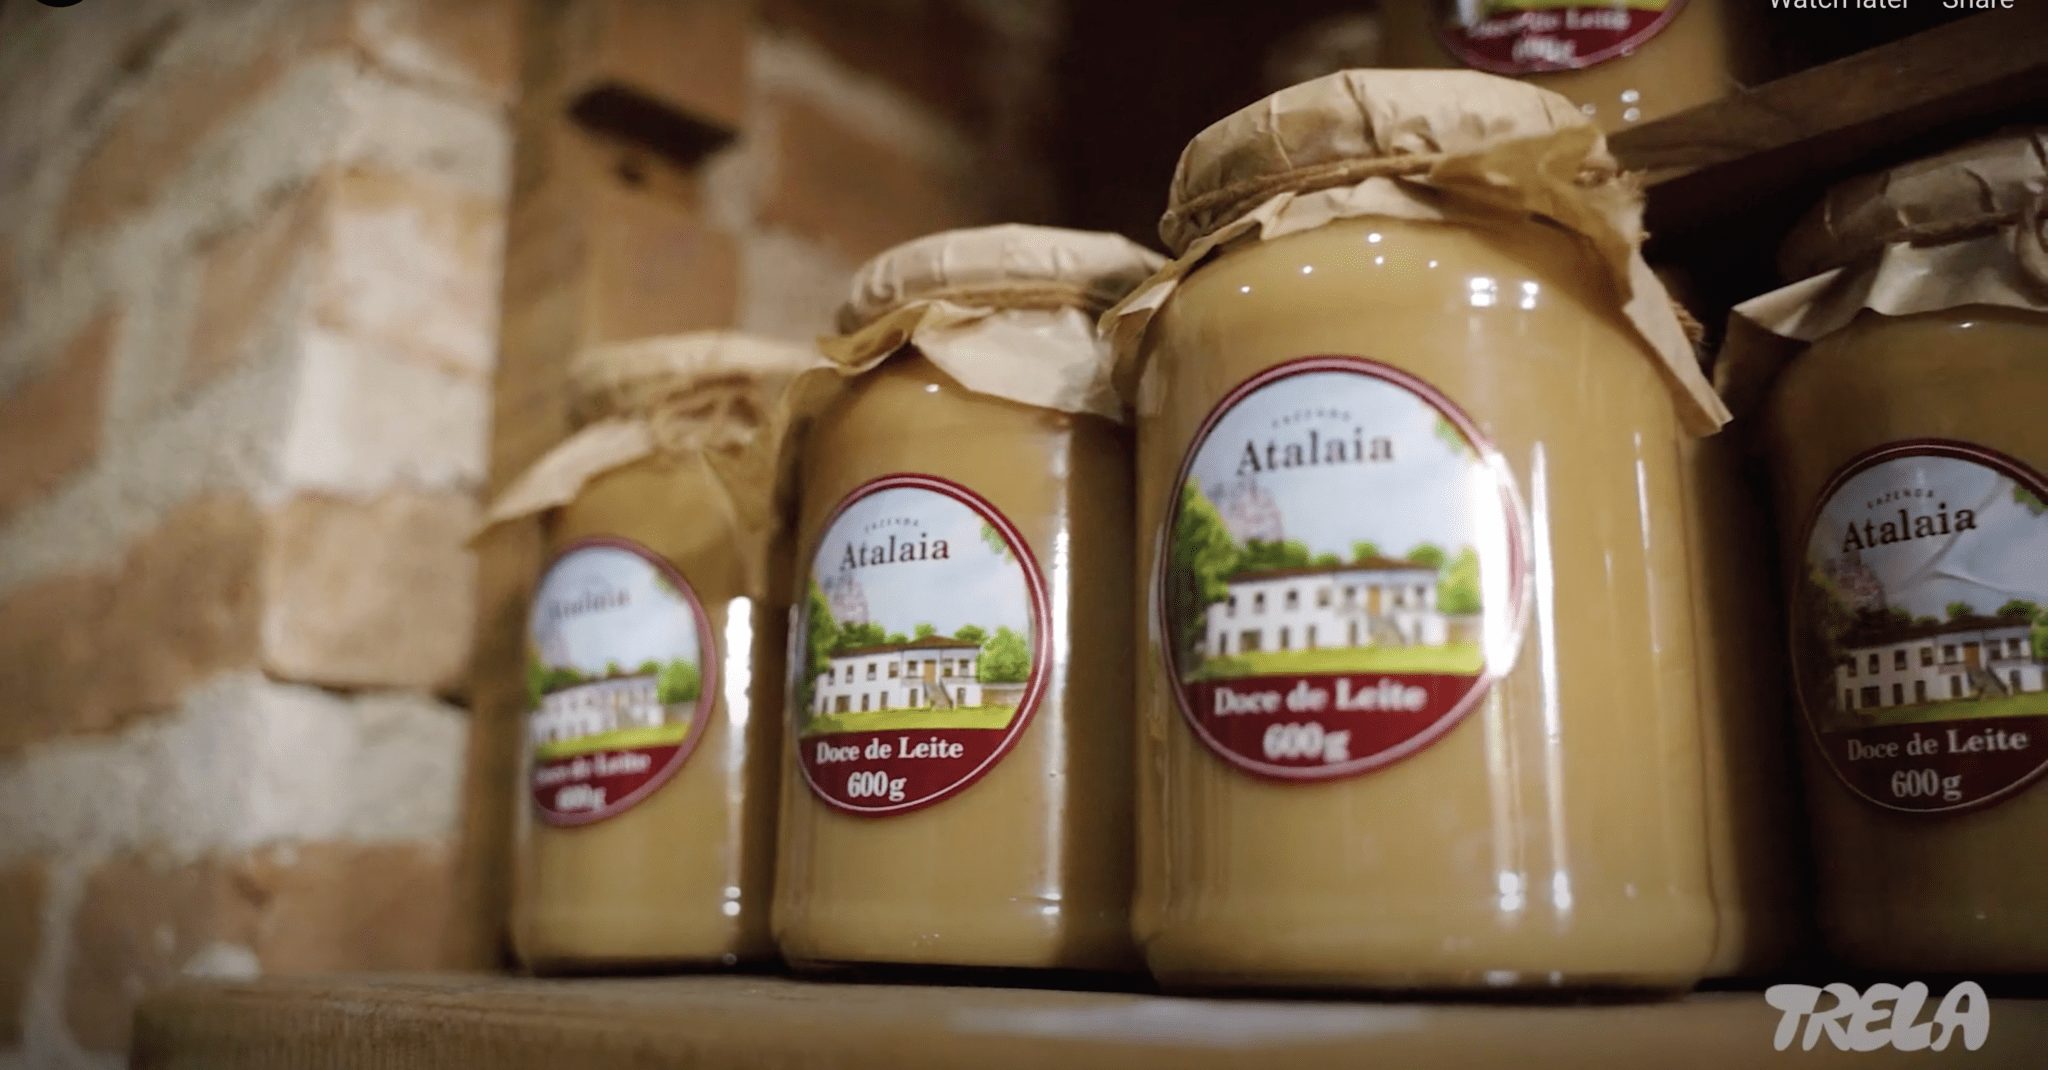 Startup de compras coletivas de alimentos Trela recebe aporte do SoftBank